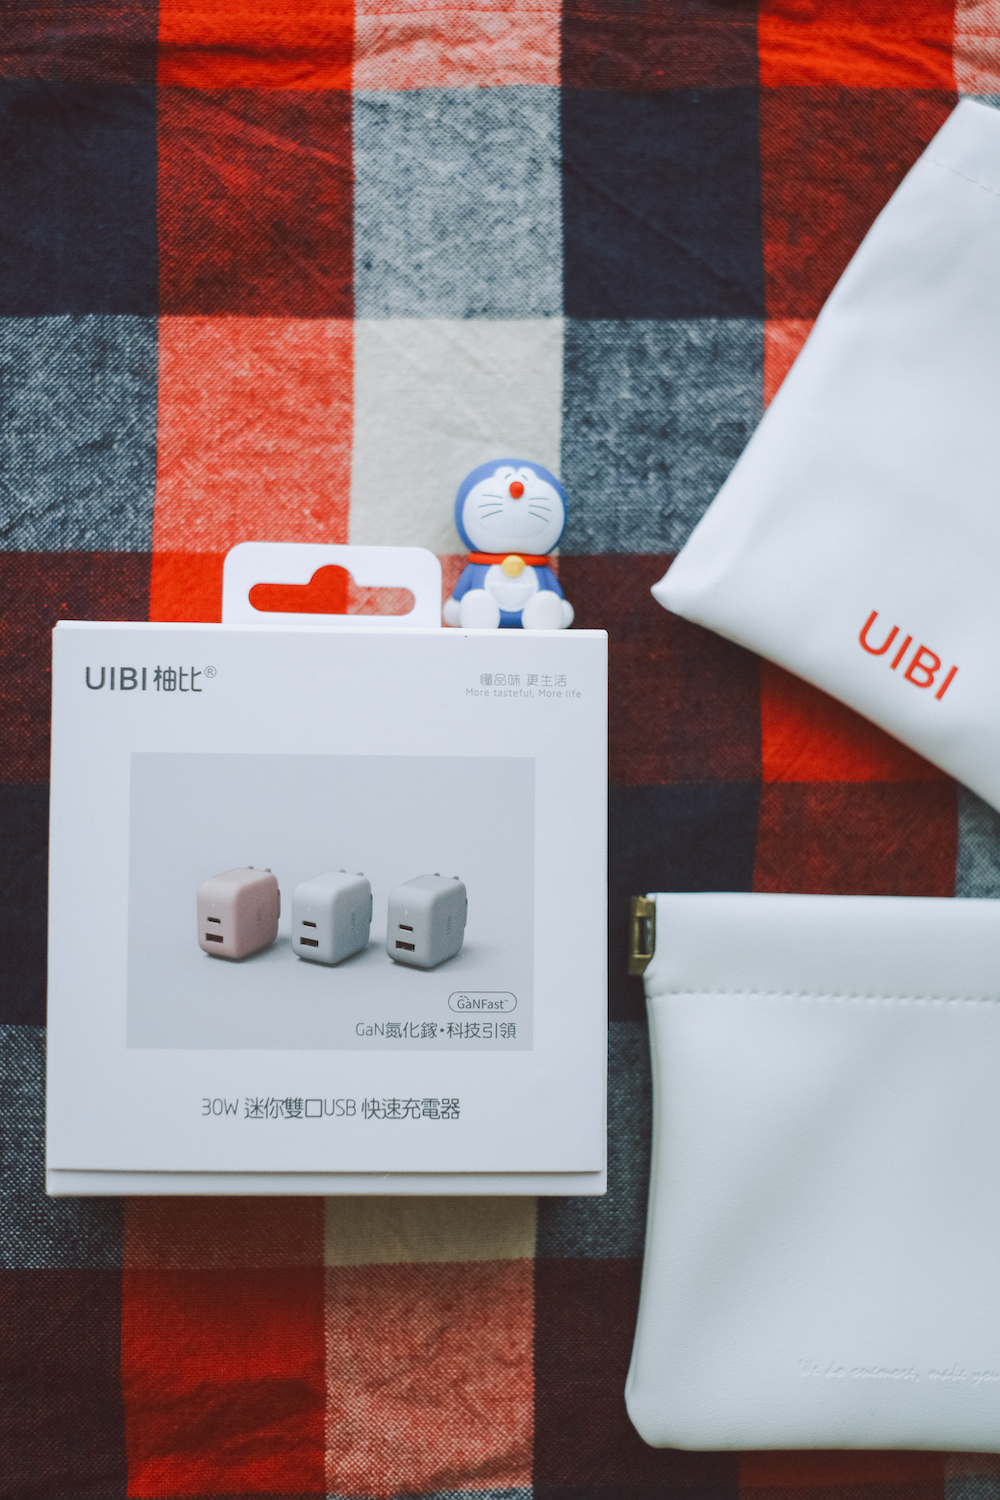 【實用分享】台灣充電器品牌「OneMore」手機/電腦UIBI系列最美快充推薦